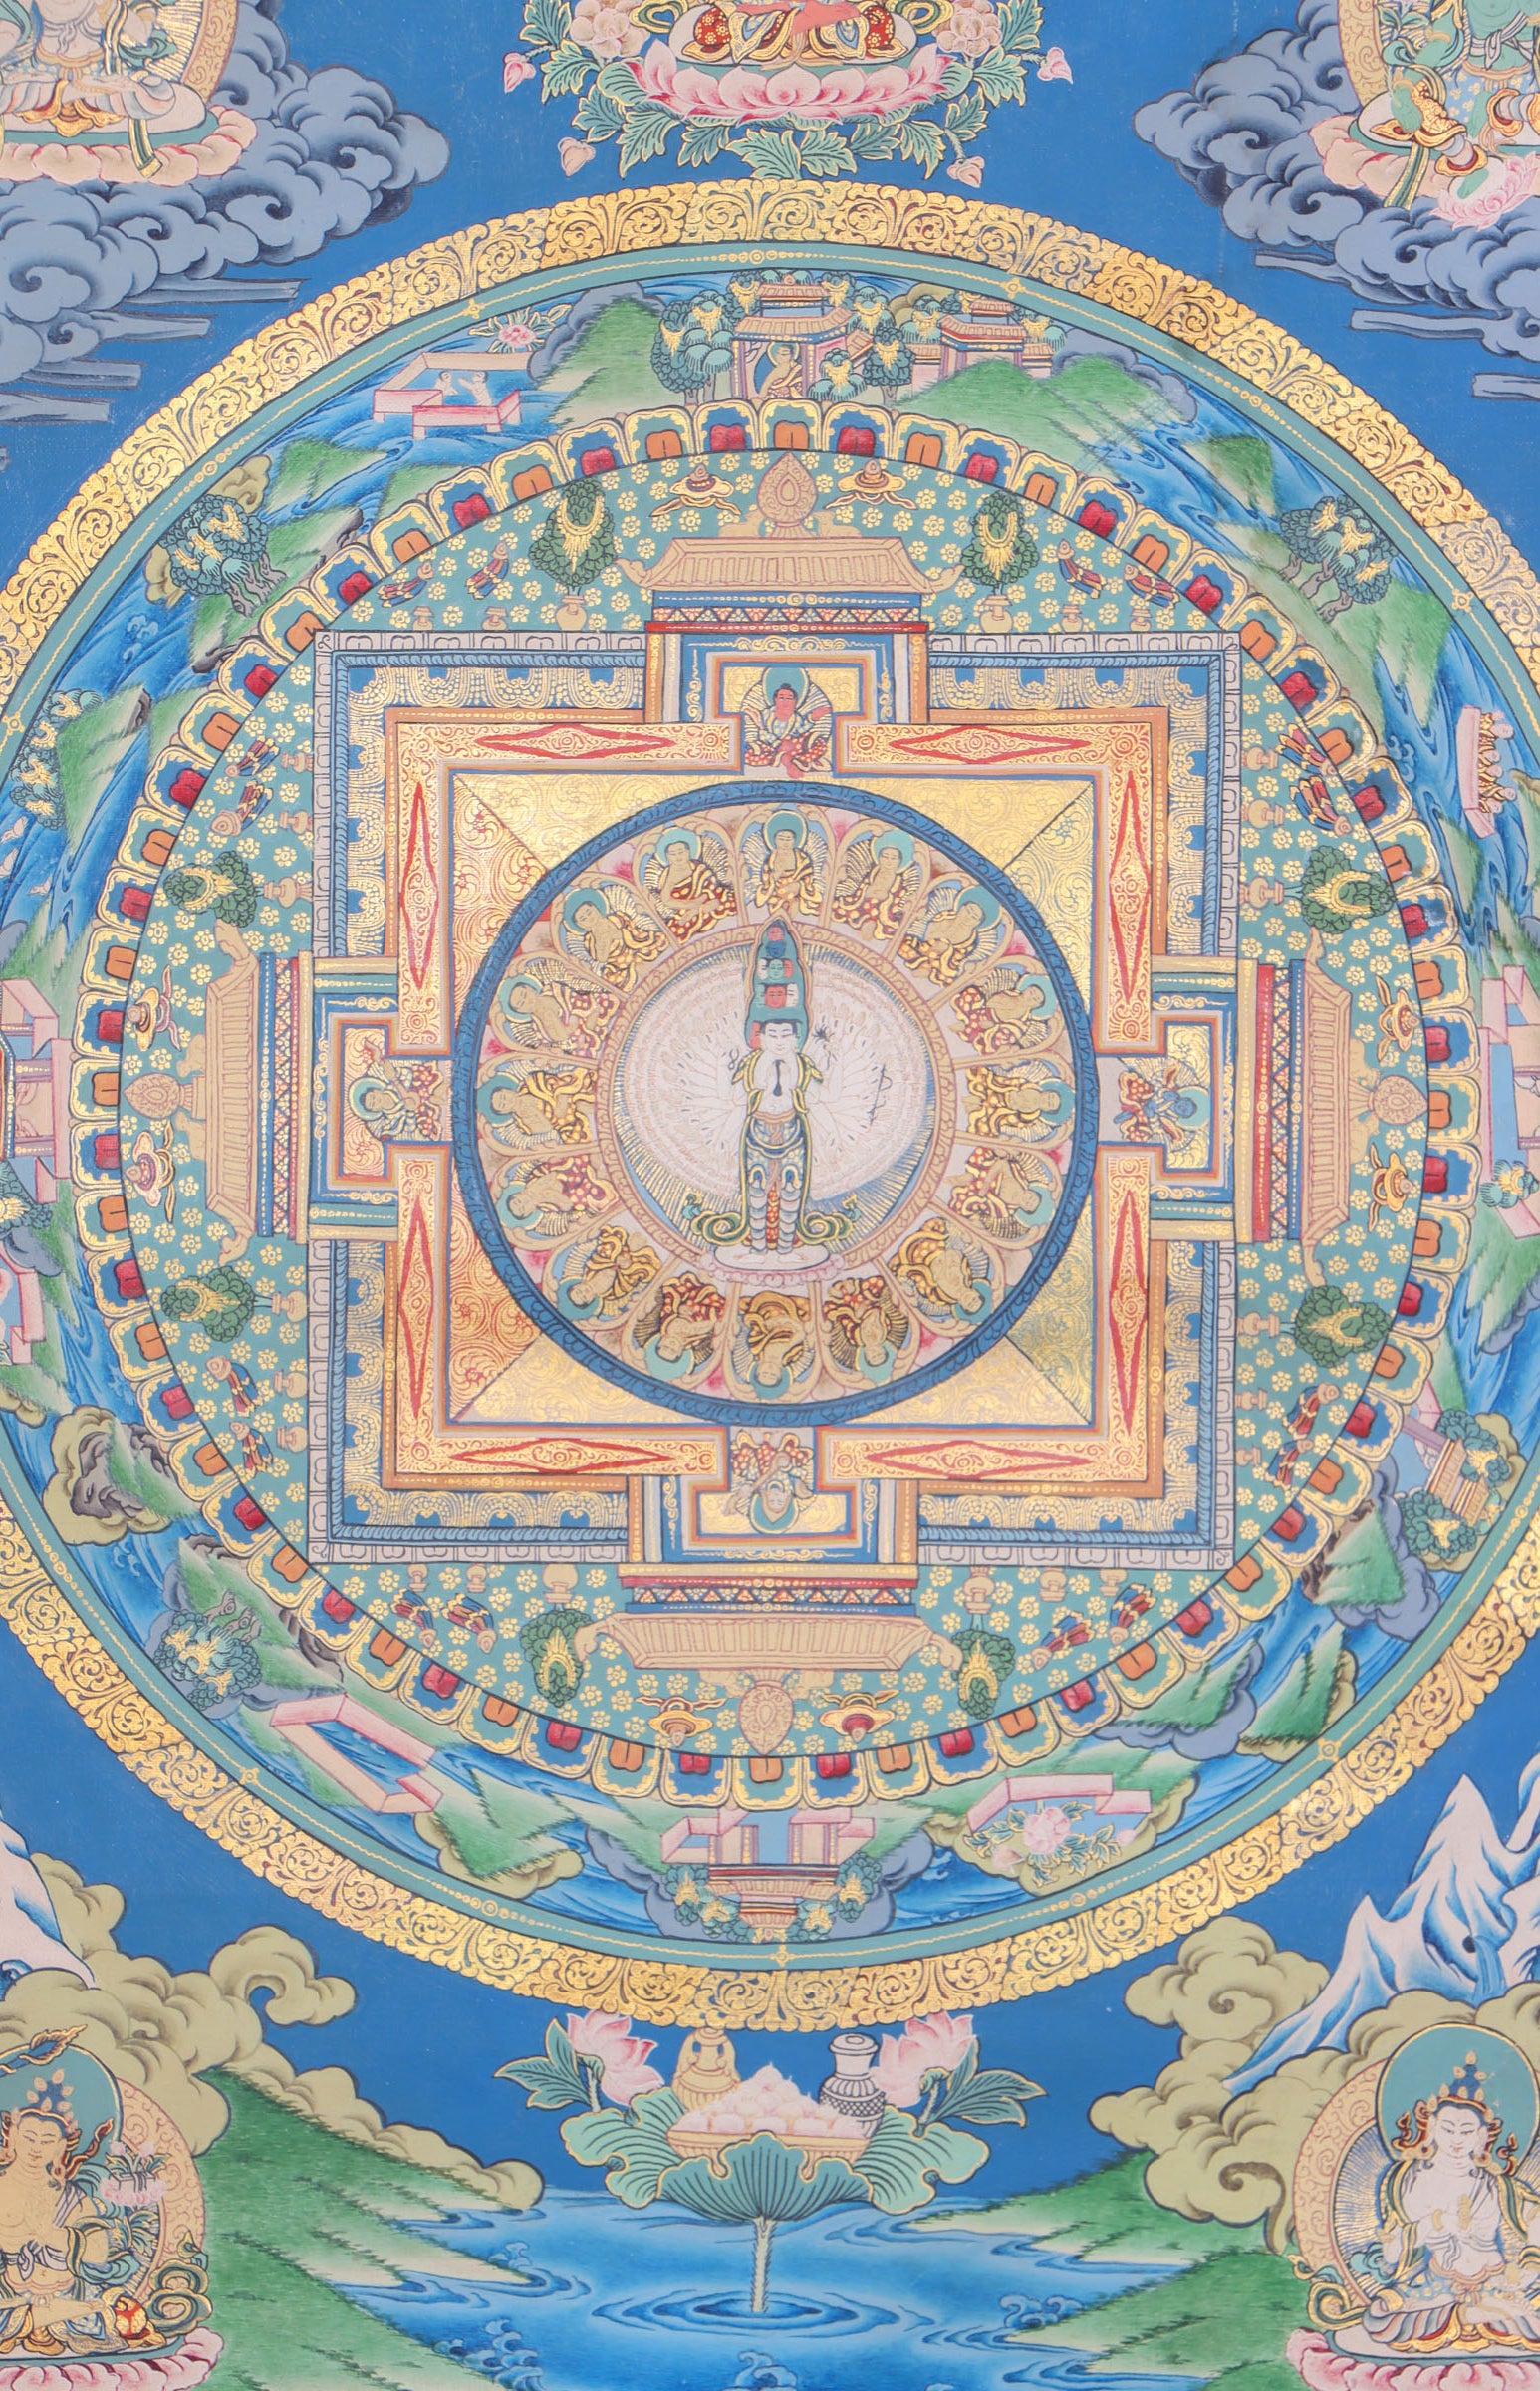 Lokeshwor Mandala Thangka for meditation and spirituality.